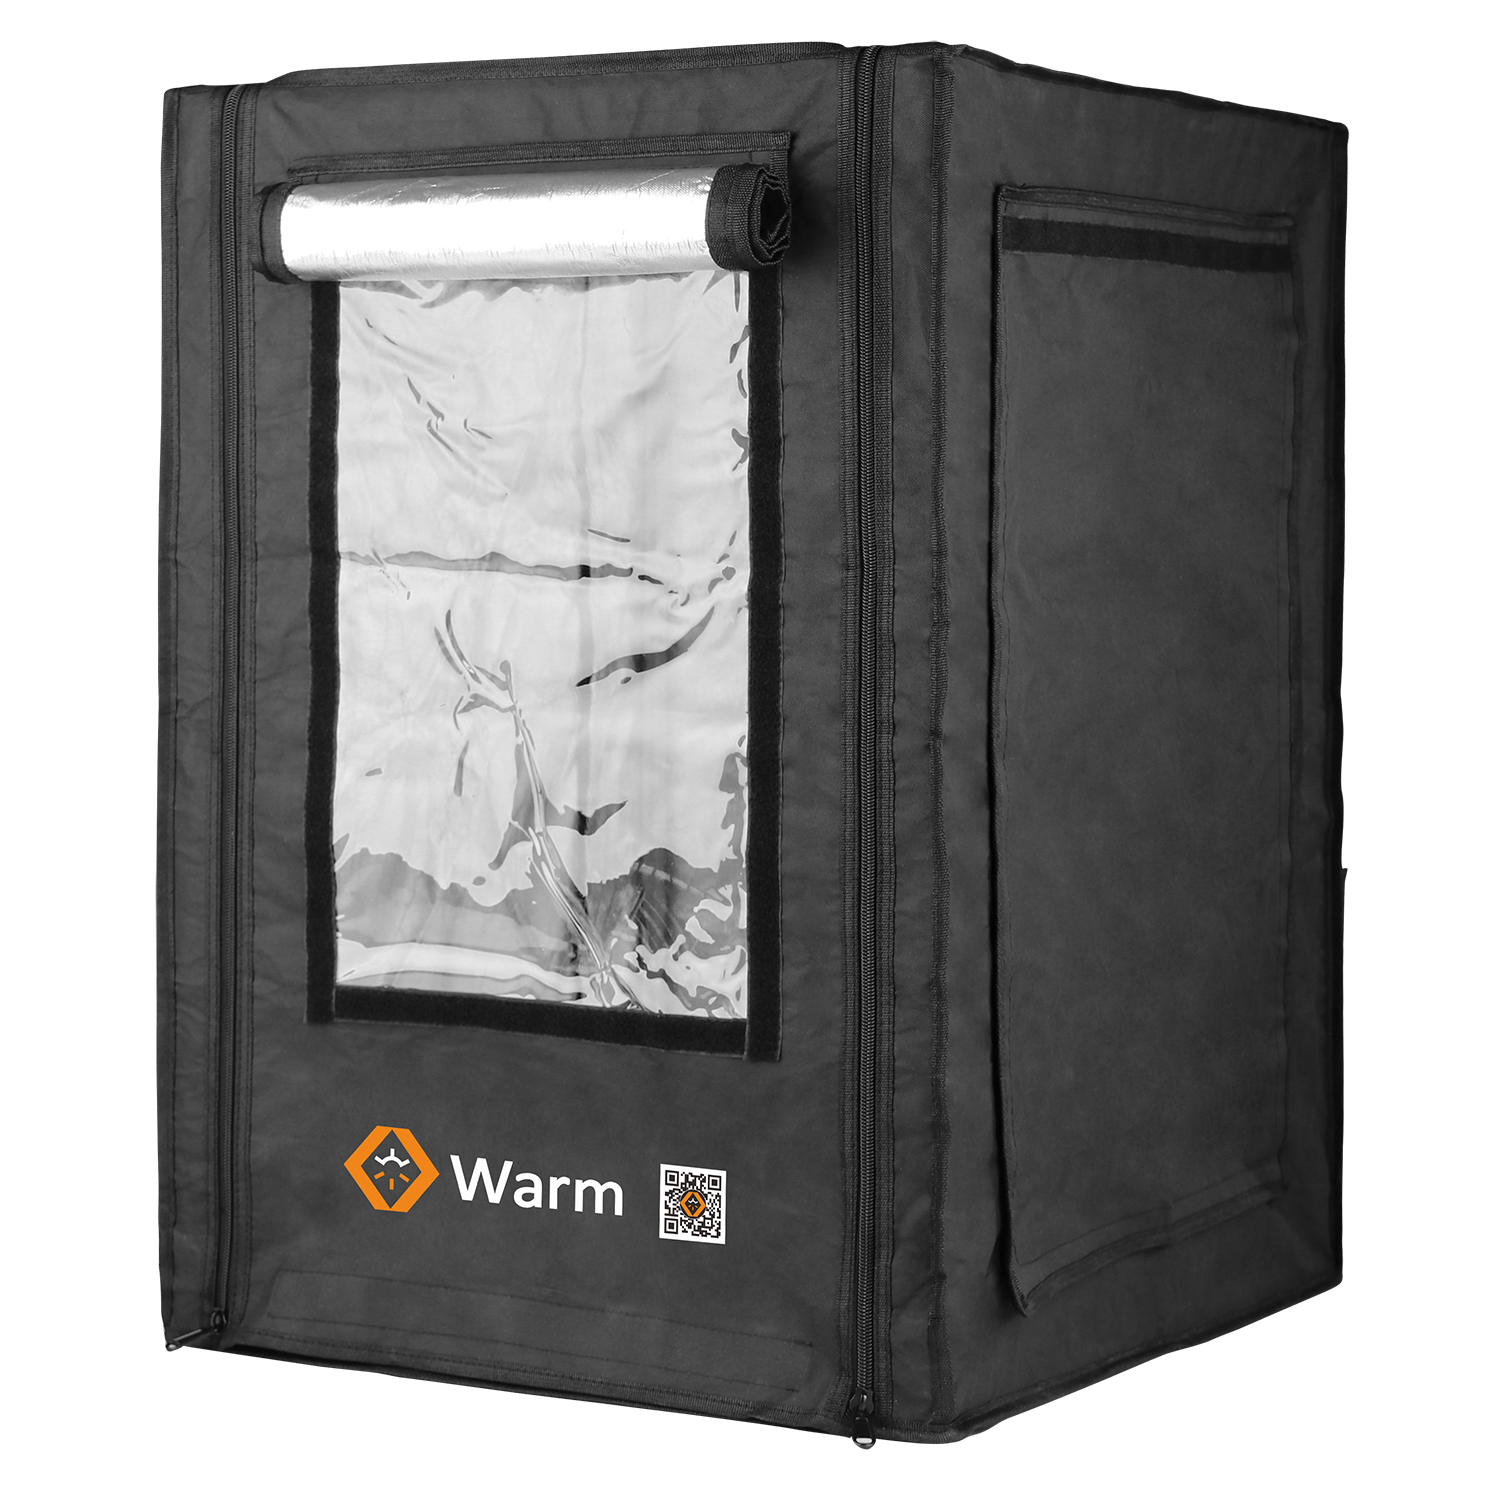 Max 3D プリンター エンクロージャ、Keep Warm、難燃性、フル カバレッジ、Studio、Warm Max
